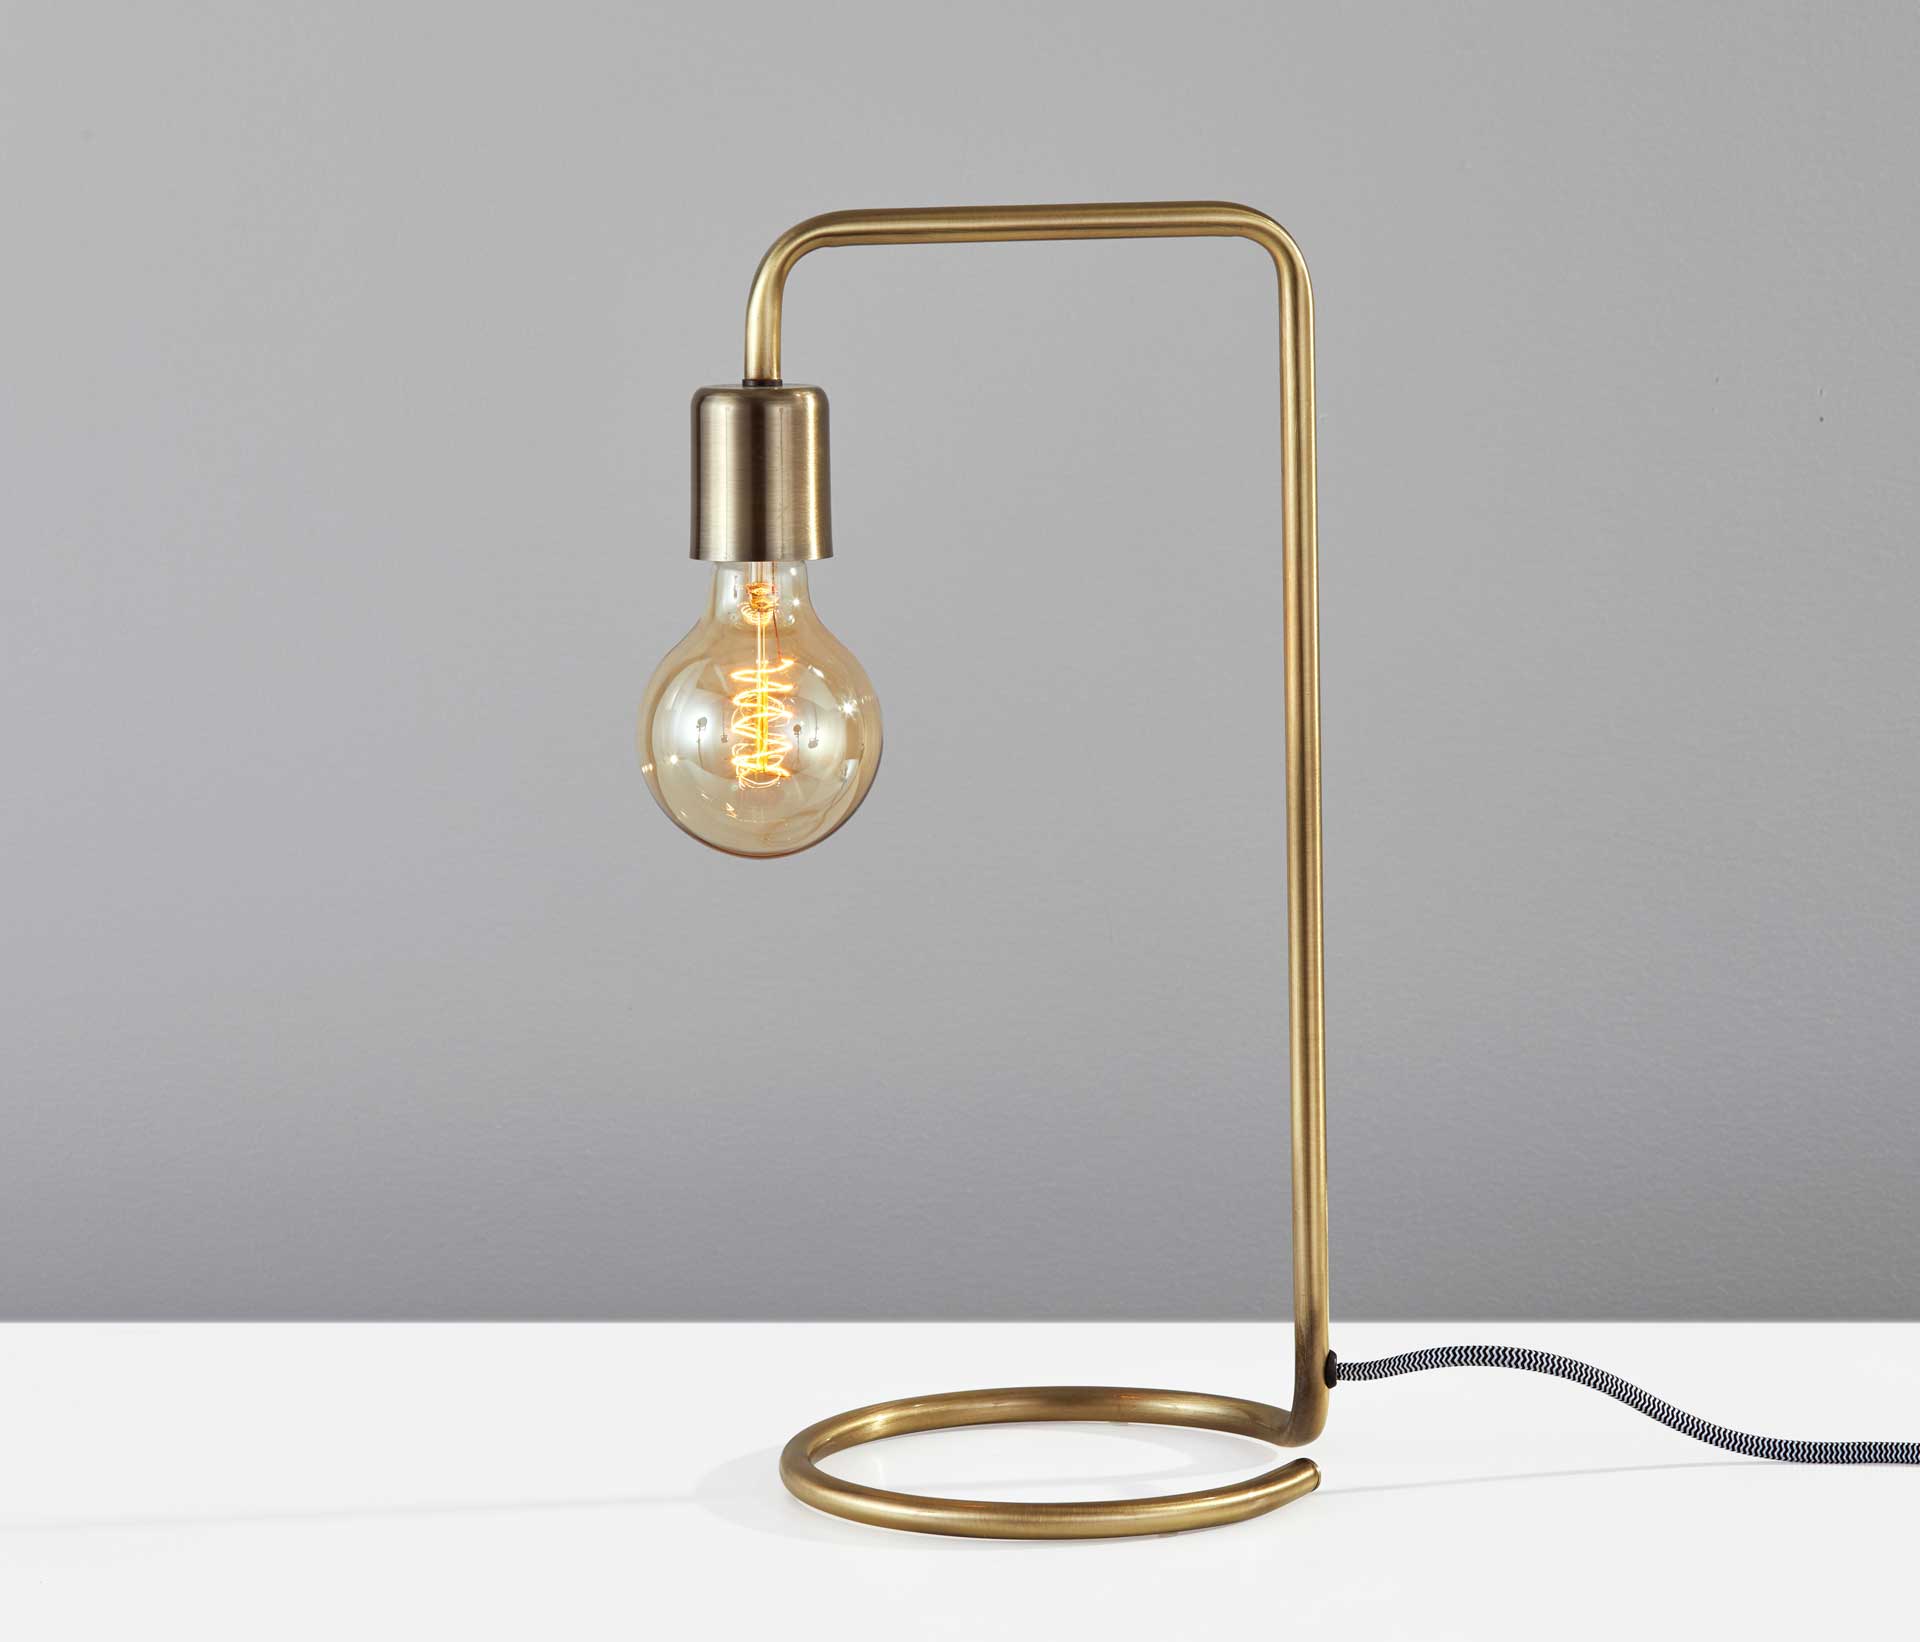 Montgeron Desk Lamp Antique Brass